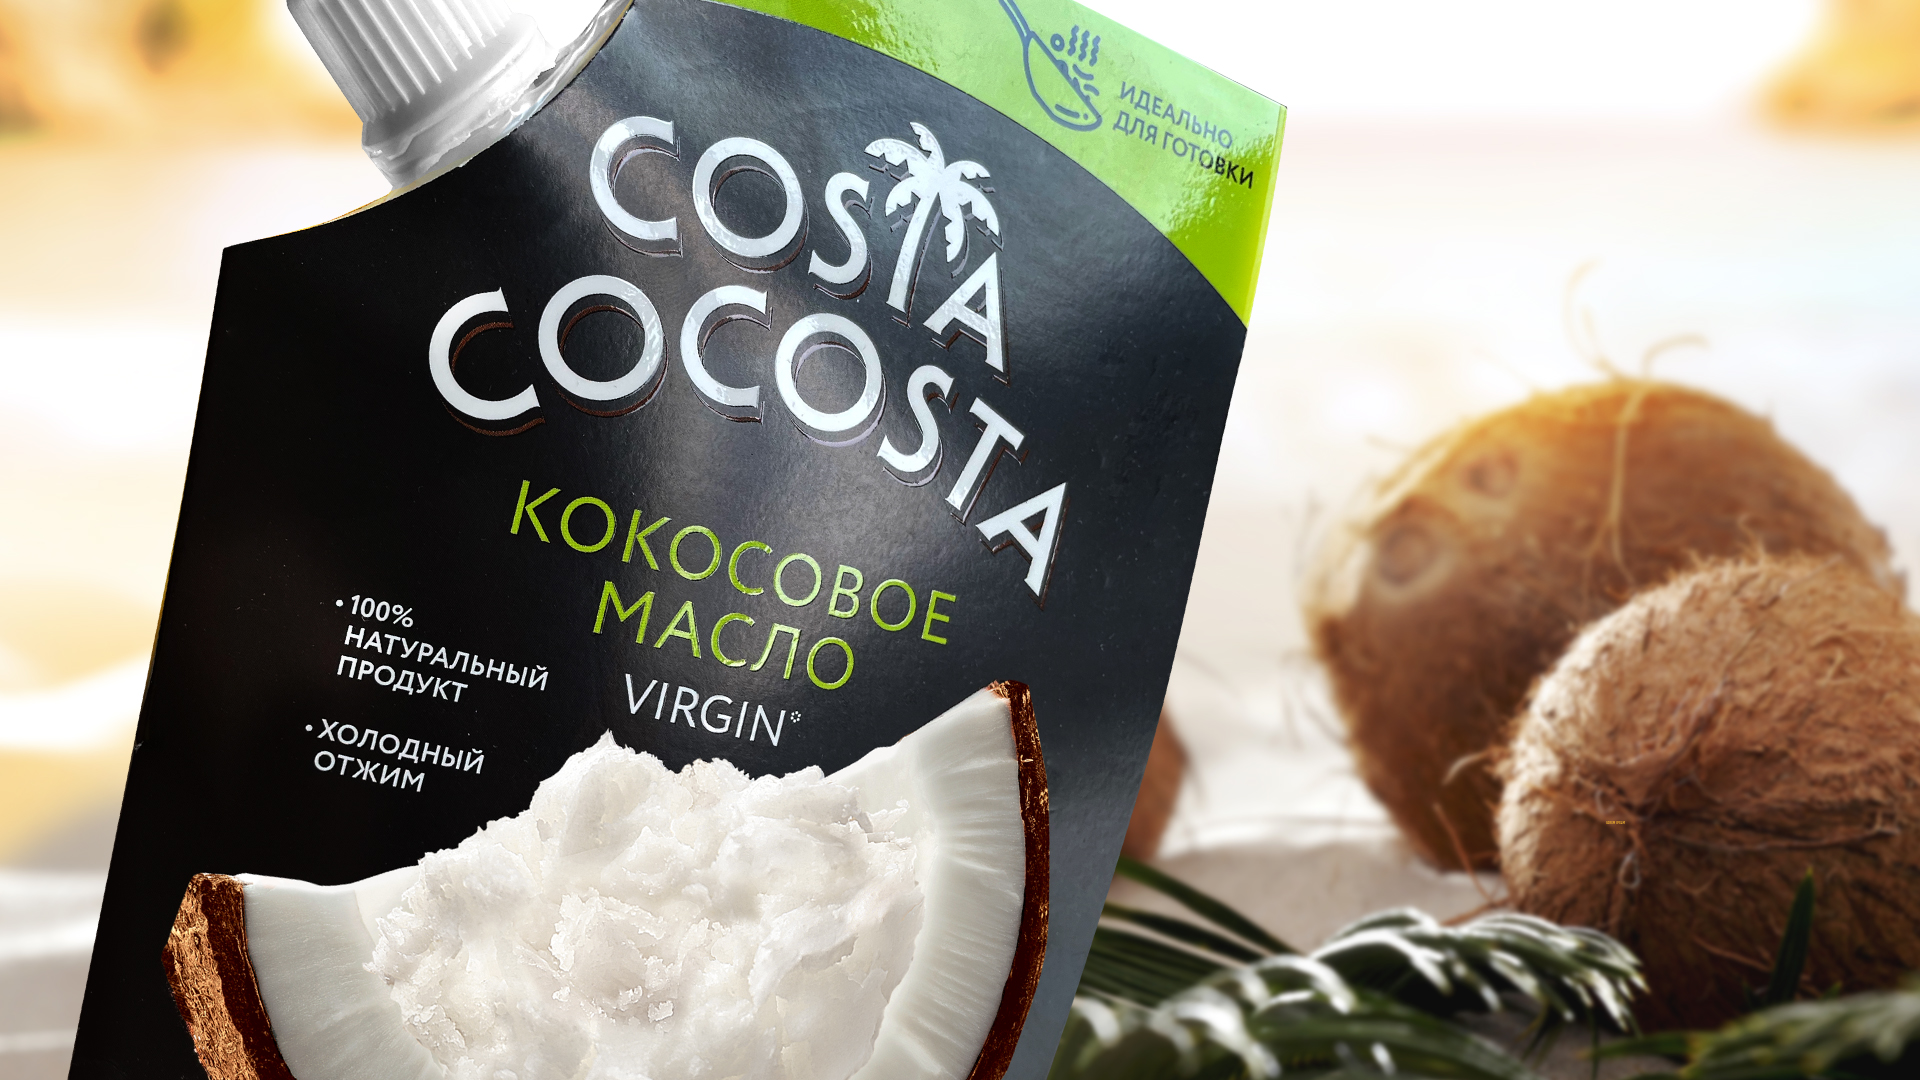 Дизайн упаковки кокосового масла Costa Cocosta